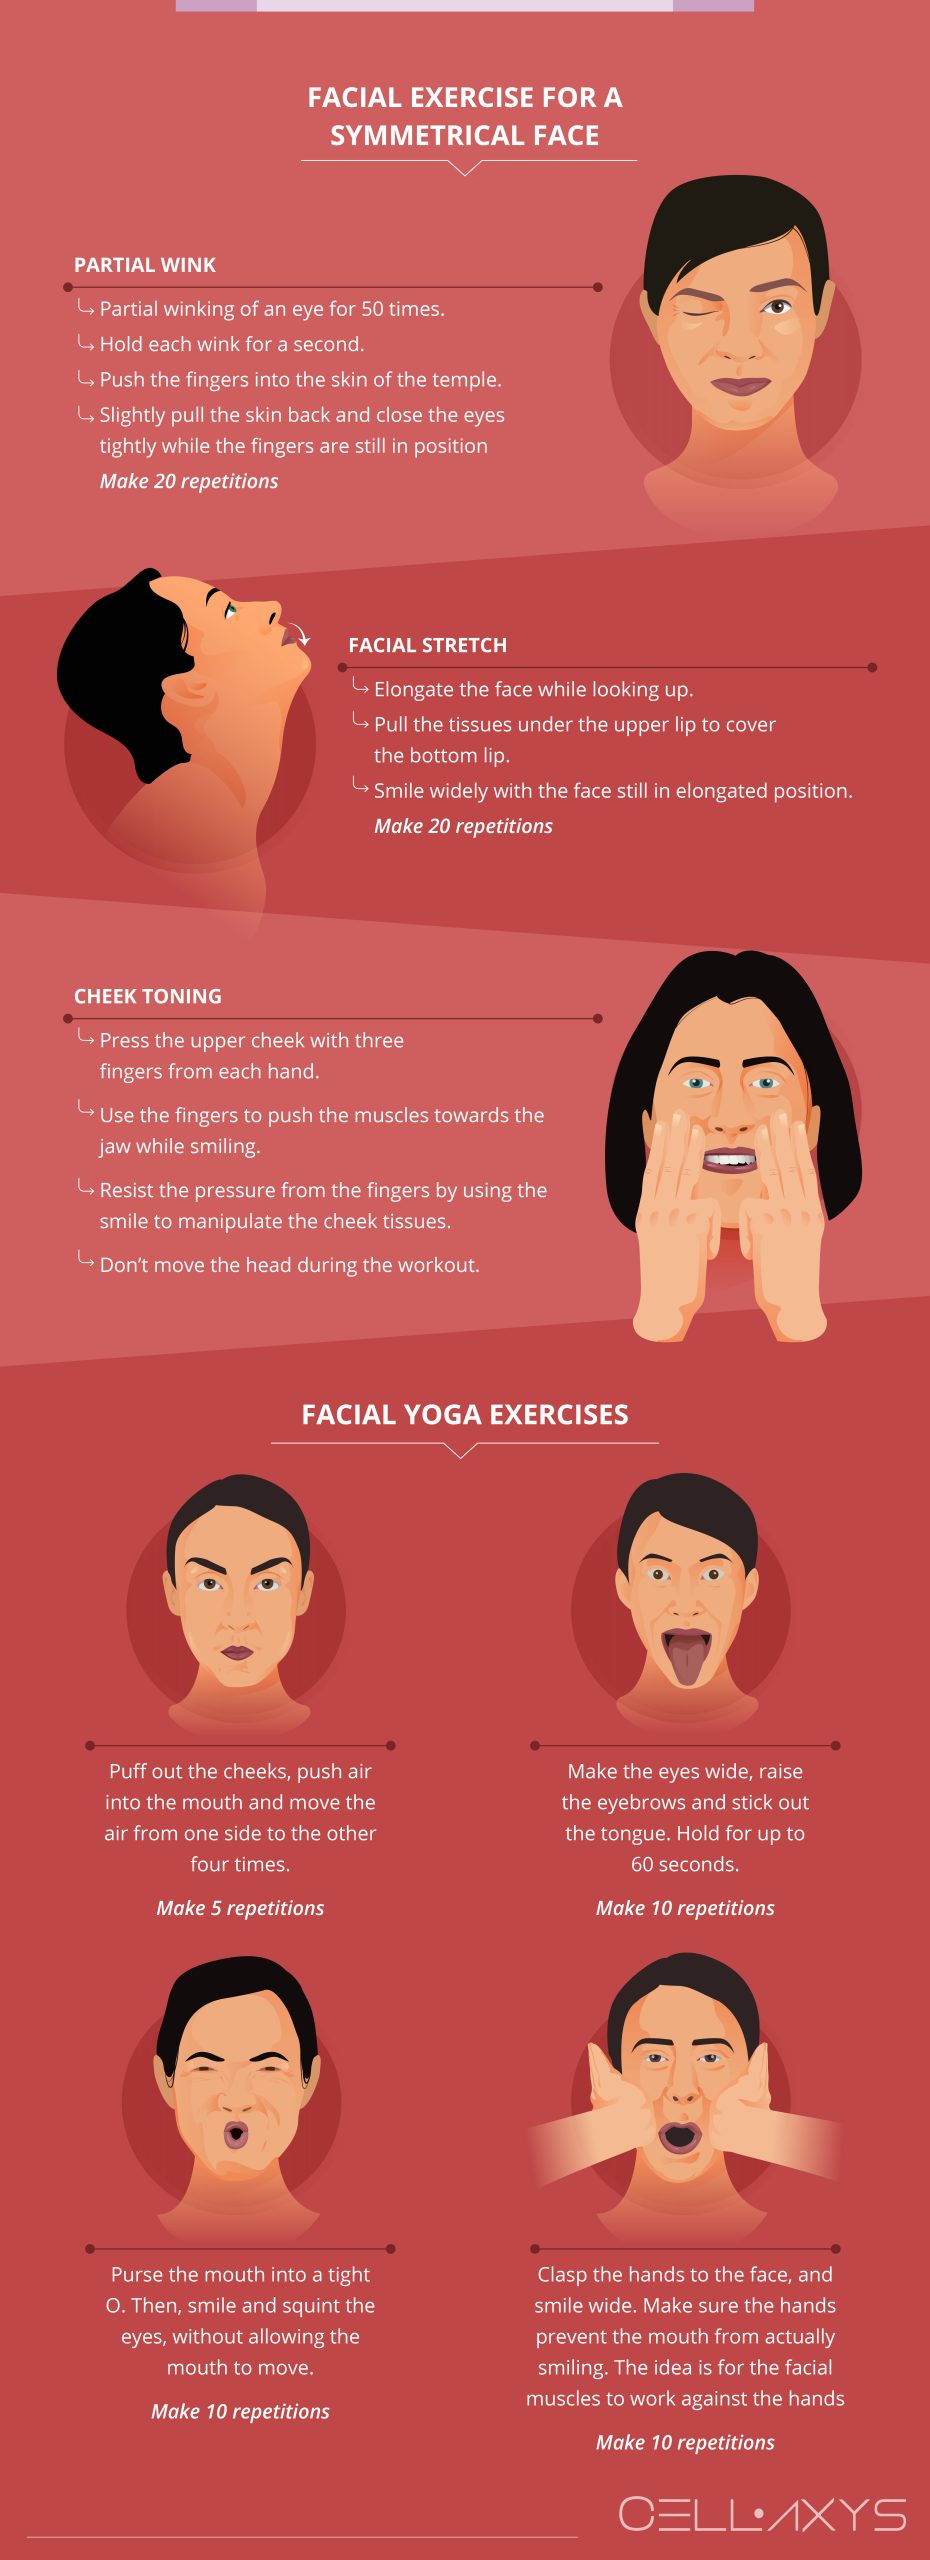 Facial Exercise for a Symmetrical Face